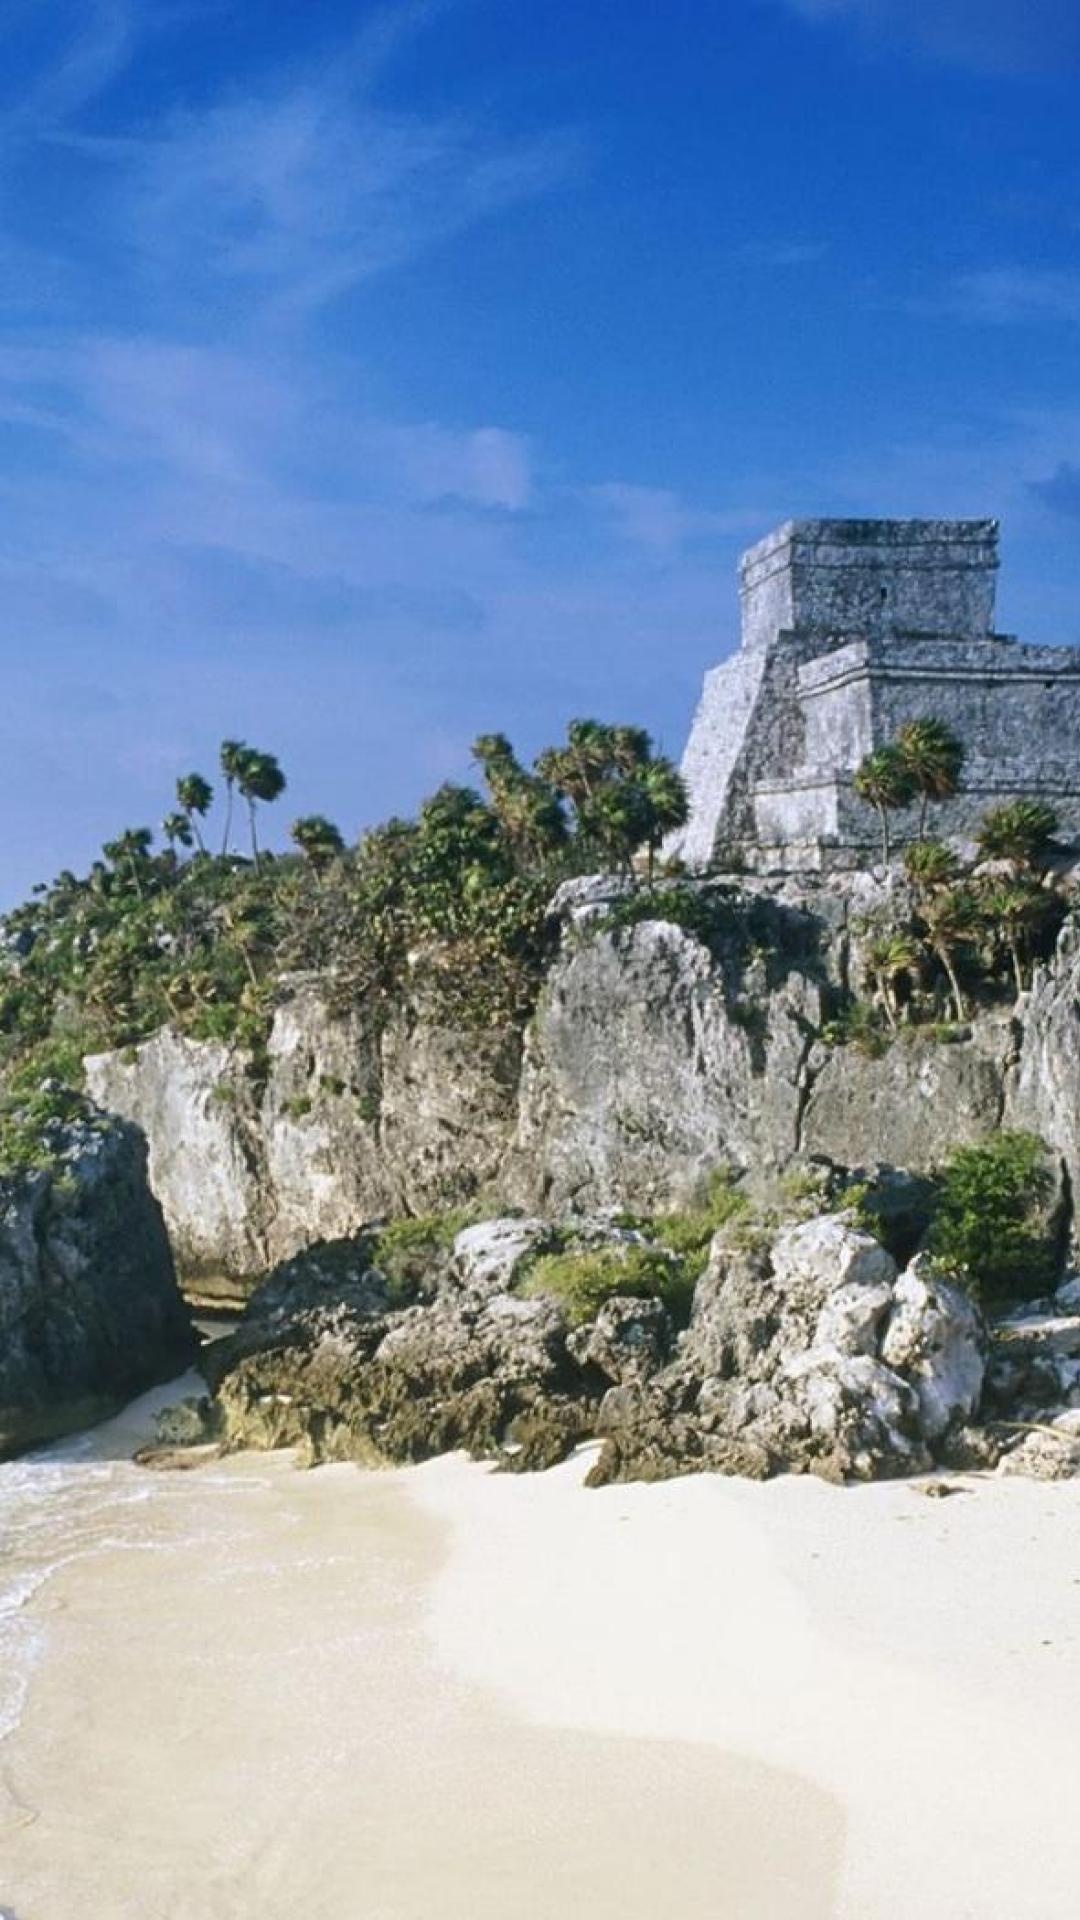 Maya ruins wallpaper, History's legacy, Ancient civilizations, Cultural relics, 1080x1920 Full HD Handy